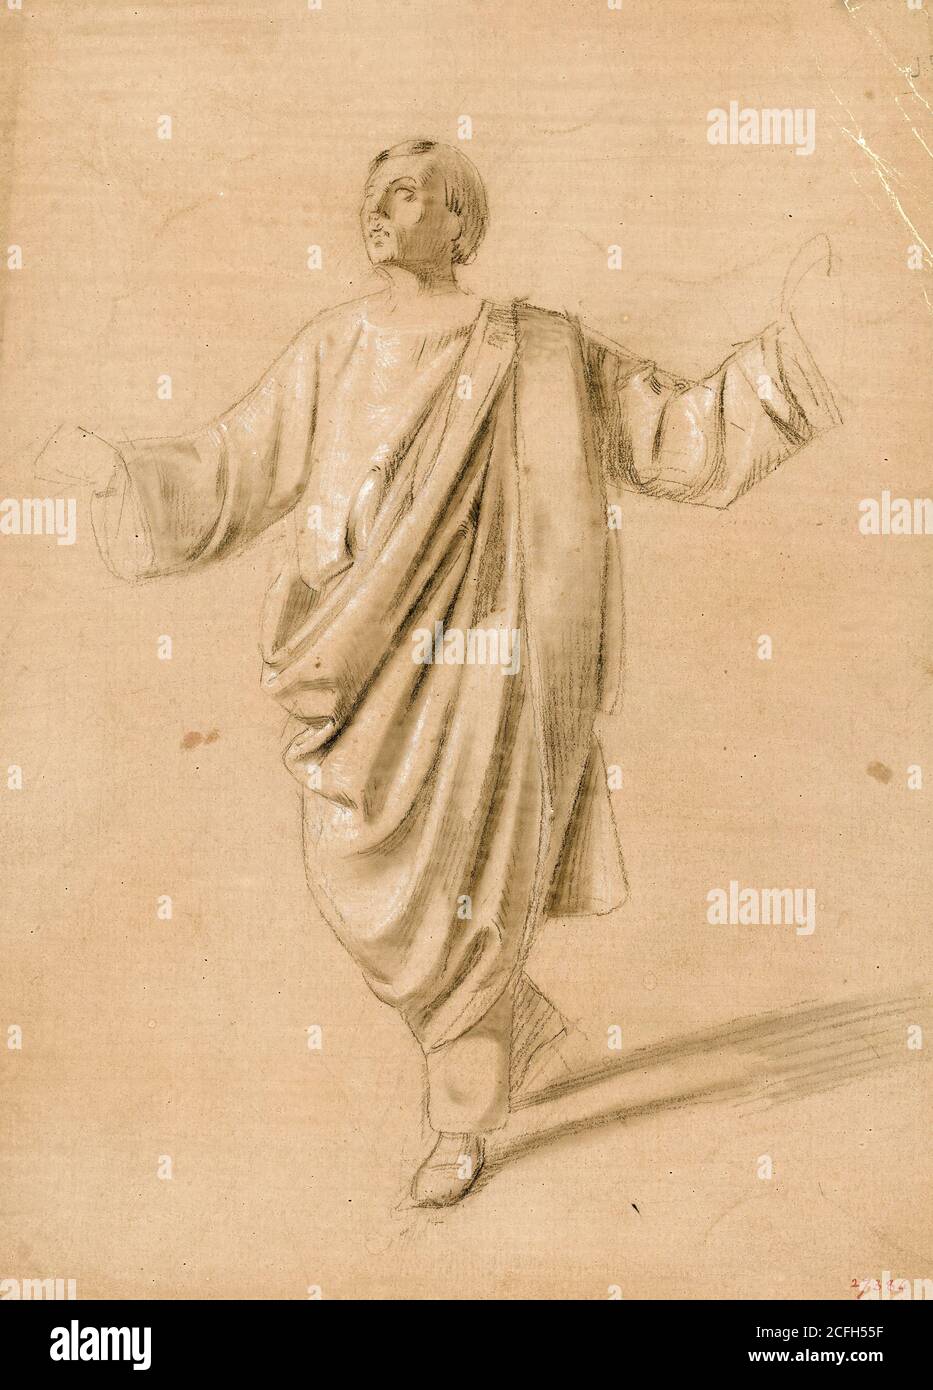 Maria Fortuny, Etude académique d'une figure masculine, Circa 1856-1858, crayon et fil blanc sur papier, Museu Nacional d'Art de Catalunya, Barcelone, Espagne. Banque D'Images